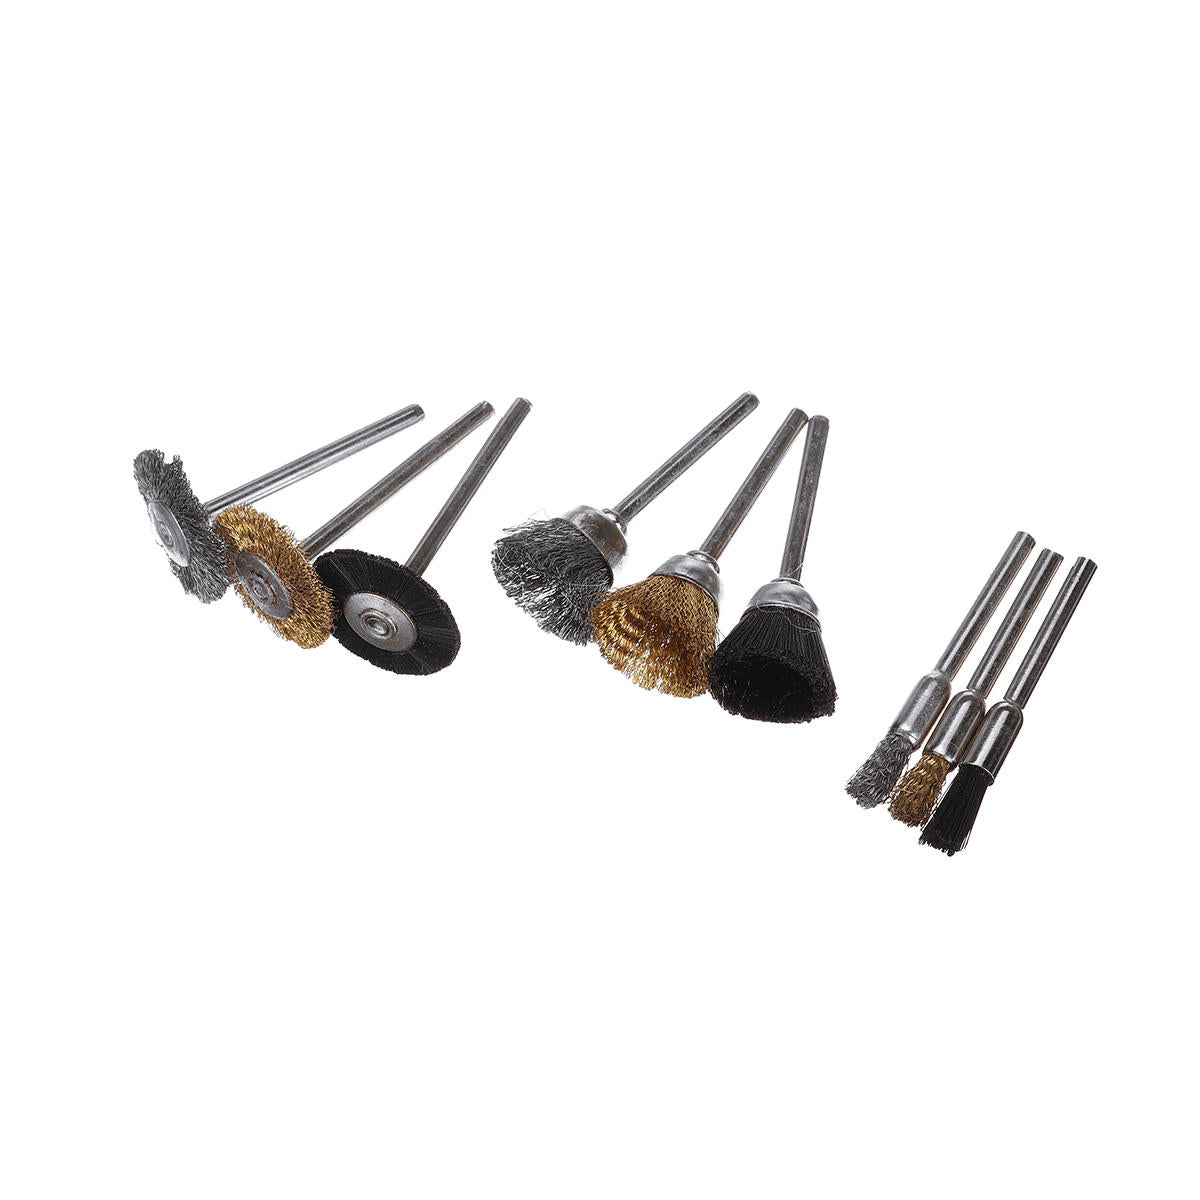 166 stuks mini elektrische grinder boor grinder accessoires rotary tool slijpen polish kit: